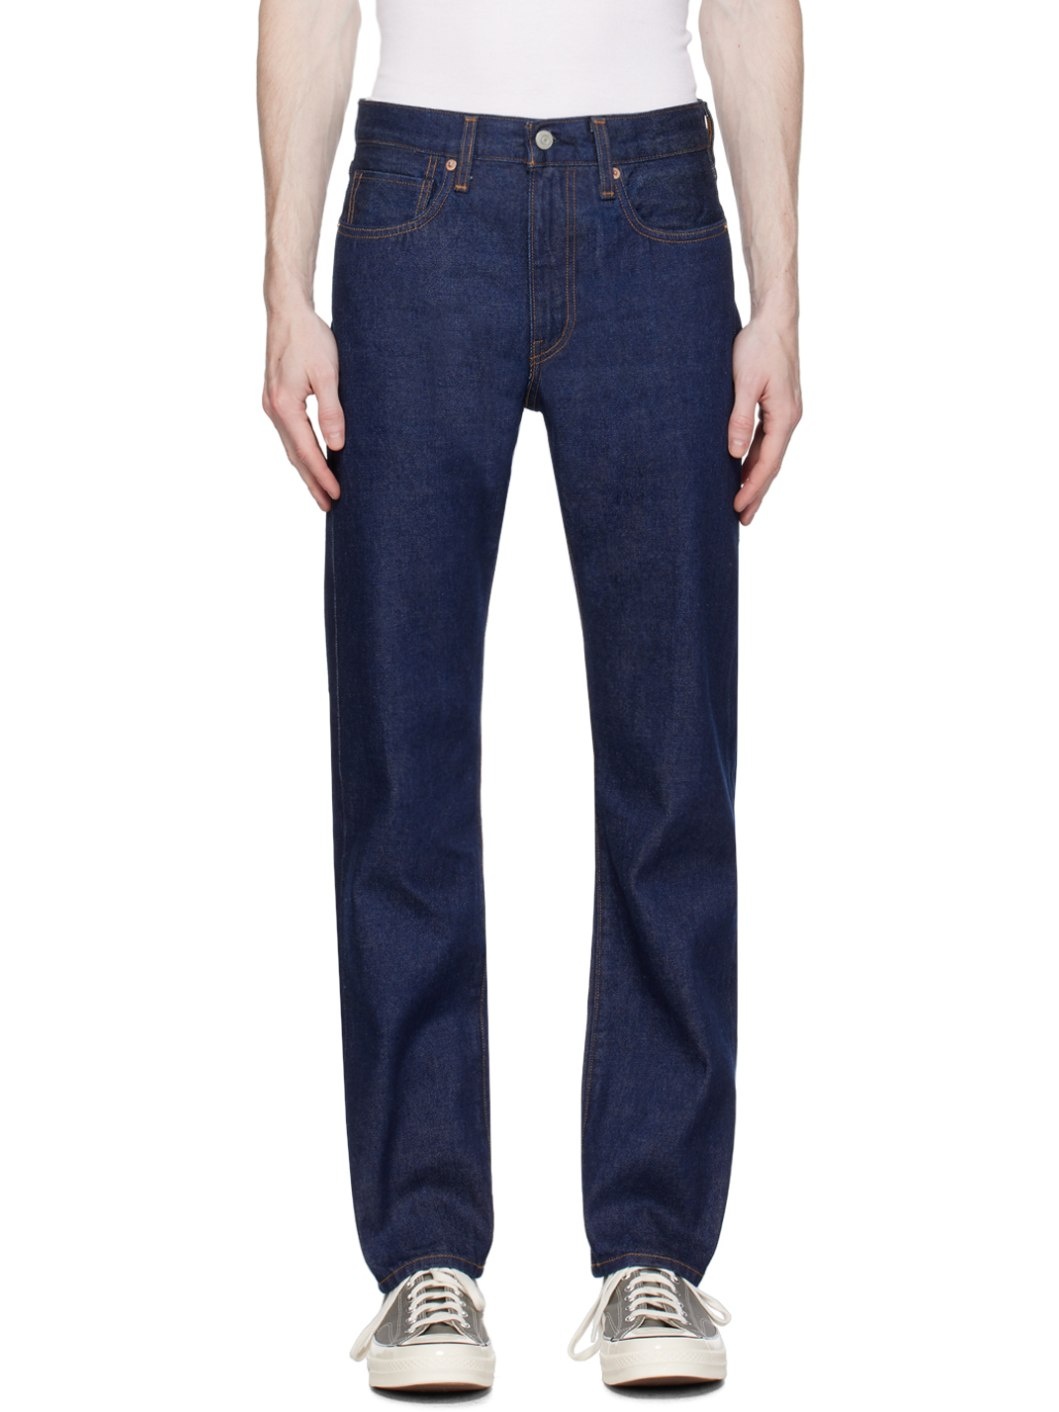 Indigo 505 Jeans - 1